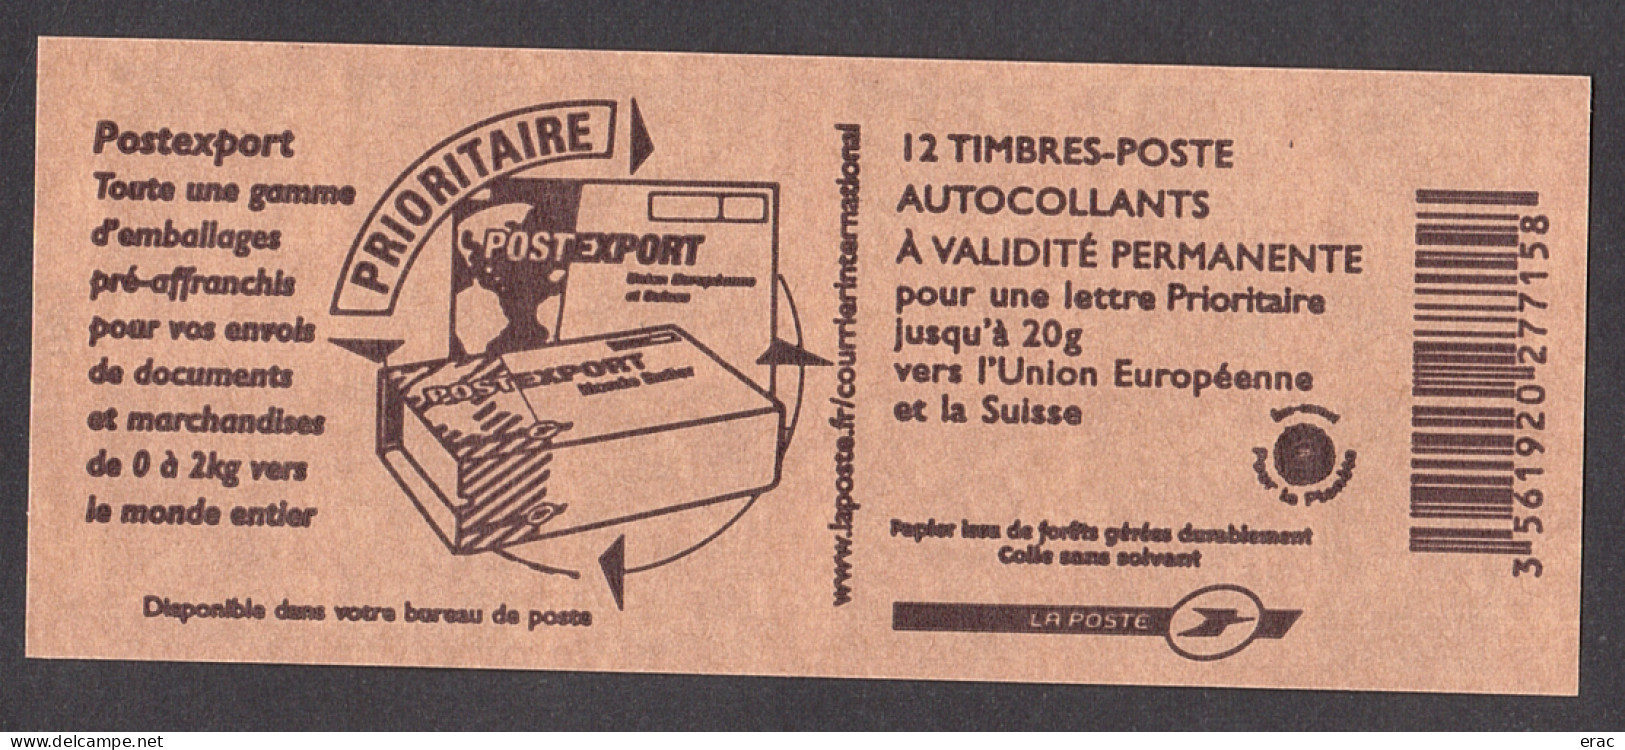 France - Carnet 4127-C1 - Neuf ** - N° De Liasse - Marianne De Lamouche - Postexport - Booklets